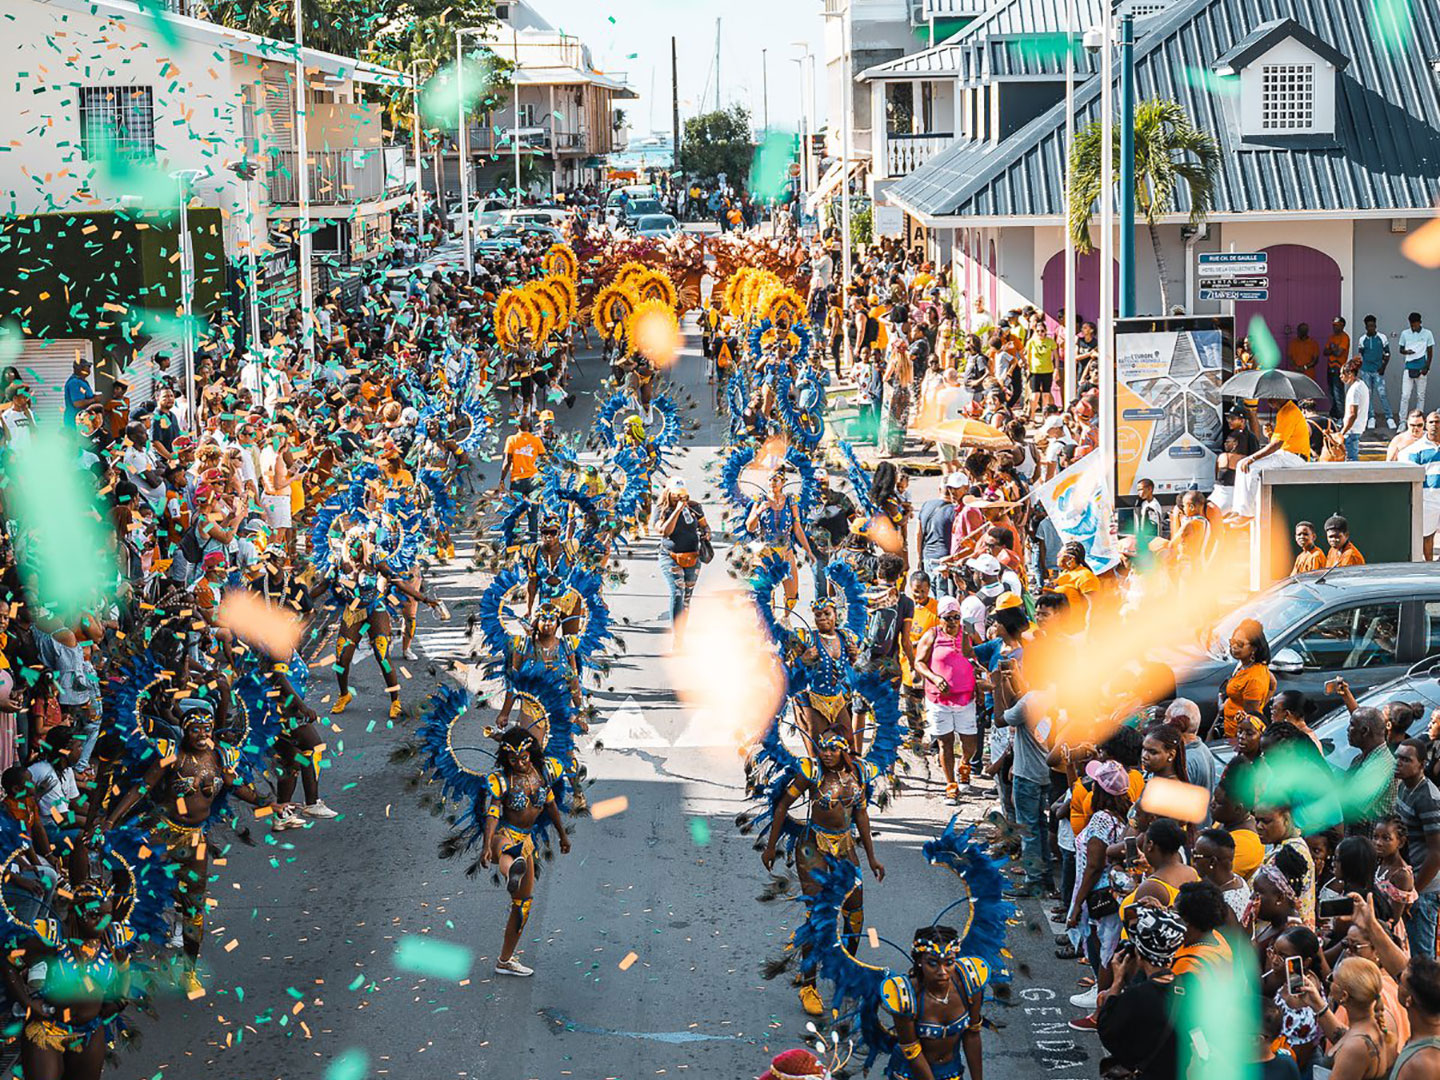 Carnaval-SXM-culture-parade